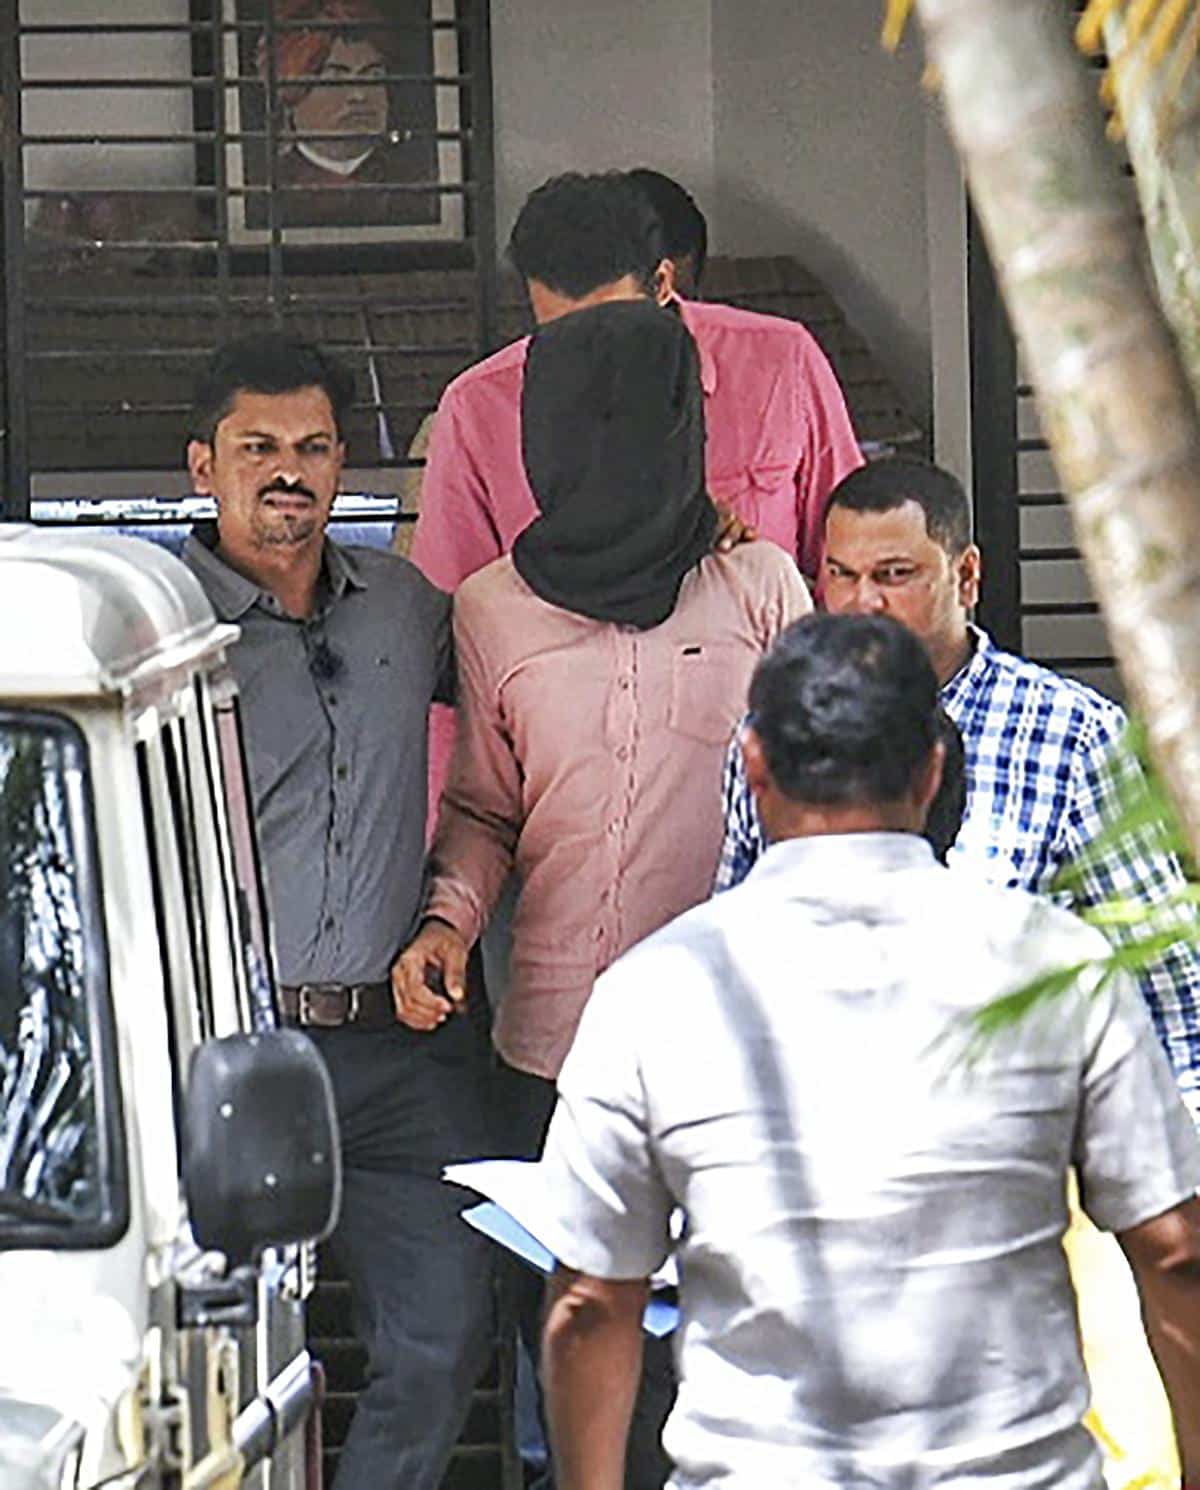 Anti-Terror Squad unit arrest Lashkar-e-Taiba (LET) Recruiter, Junaid Mohammed in Pune, Maharashtra State, India